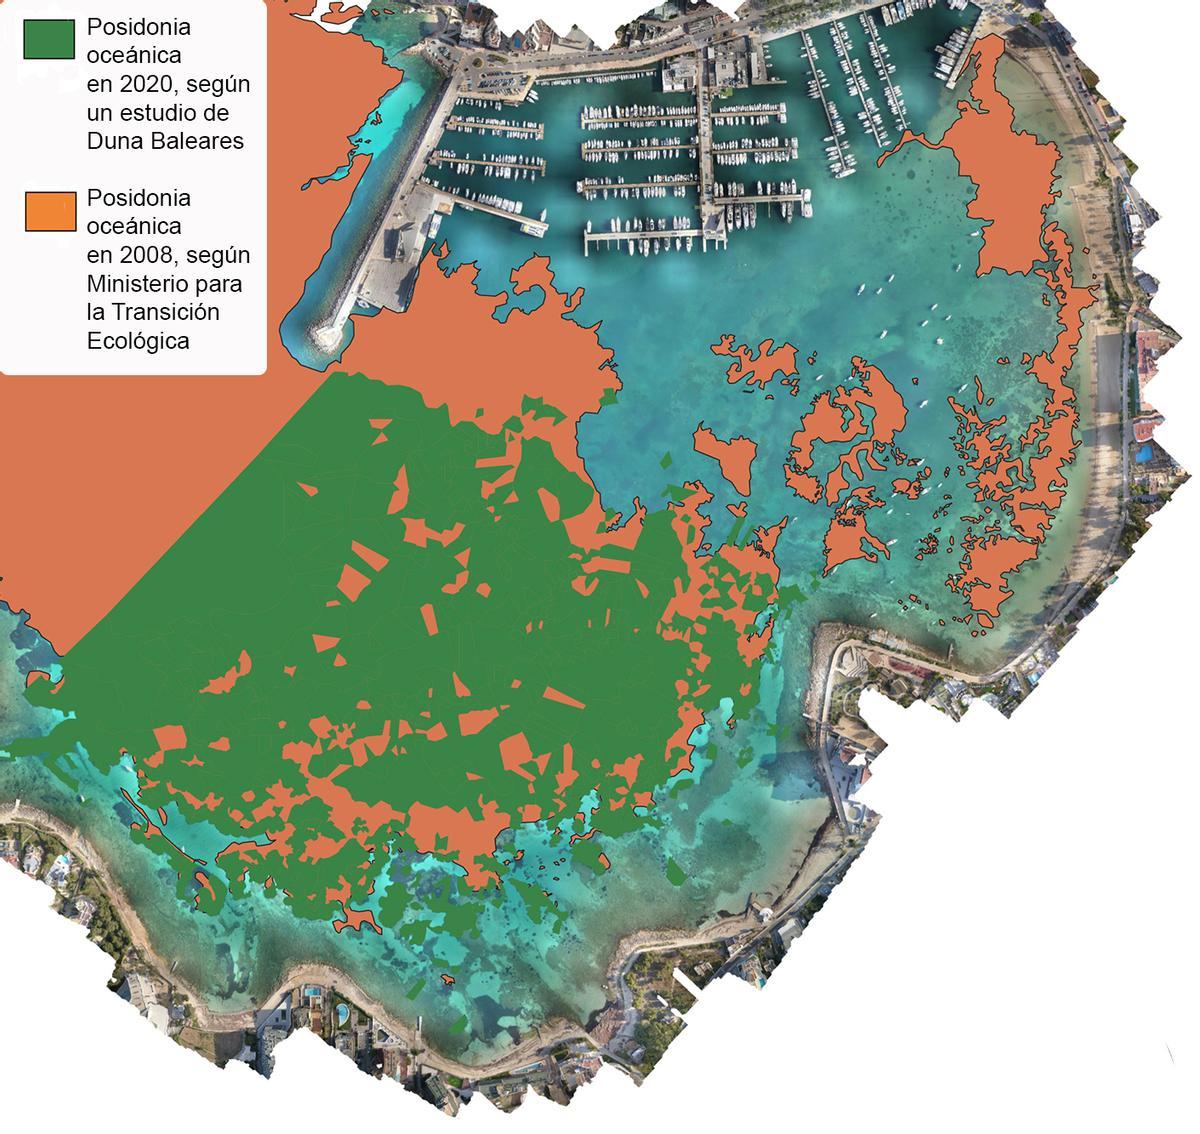 Comparativa sobre la extensión de ‘Posidonia oceanica’ en la bahía de Portmany entre 2008 y 2020.